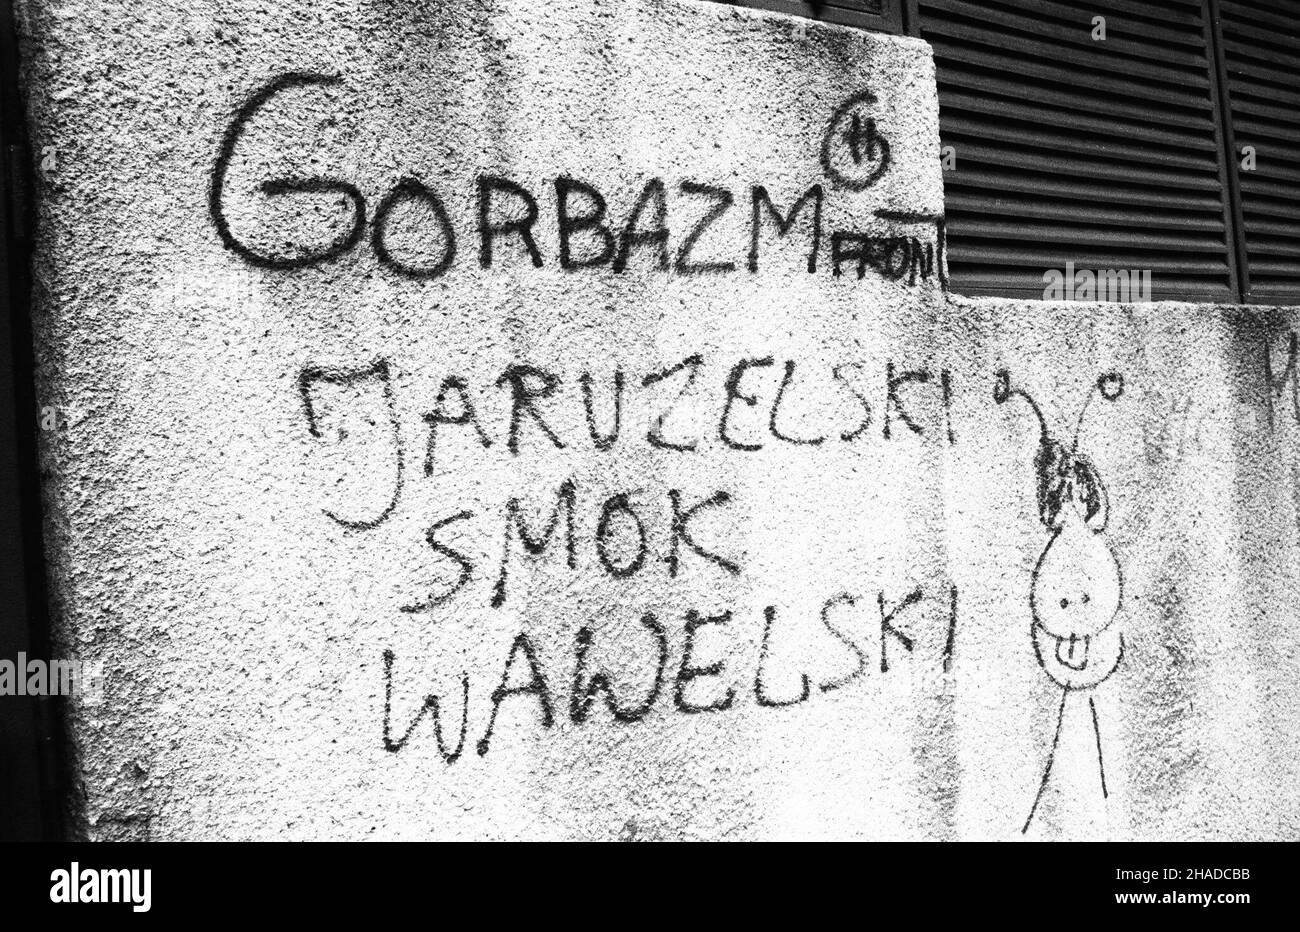 Warszawa, 12,1990. Pojawi³a siê nowa forma wypowiedzi publicznej - graffiti polityczne. NZ. Napis 'Jaruzelski Smok wawelski'. (ptr) PAP/CAF/Jab³onowski Varsavia, 12,1990. Apparve una nuova forma di espressione - i graffiti politici. Nella foto: Graffitti sul muro recita 'Jaruzelski smok wawelski' (Jaruzelski, drago Wawel; 'Jaruzelski' rime con 'wawelski'). (ptr) PAP/CAF/Jablonowski Foto Stock